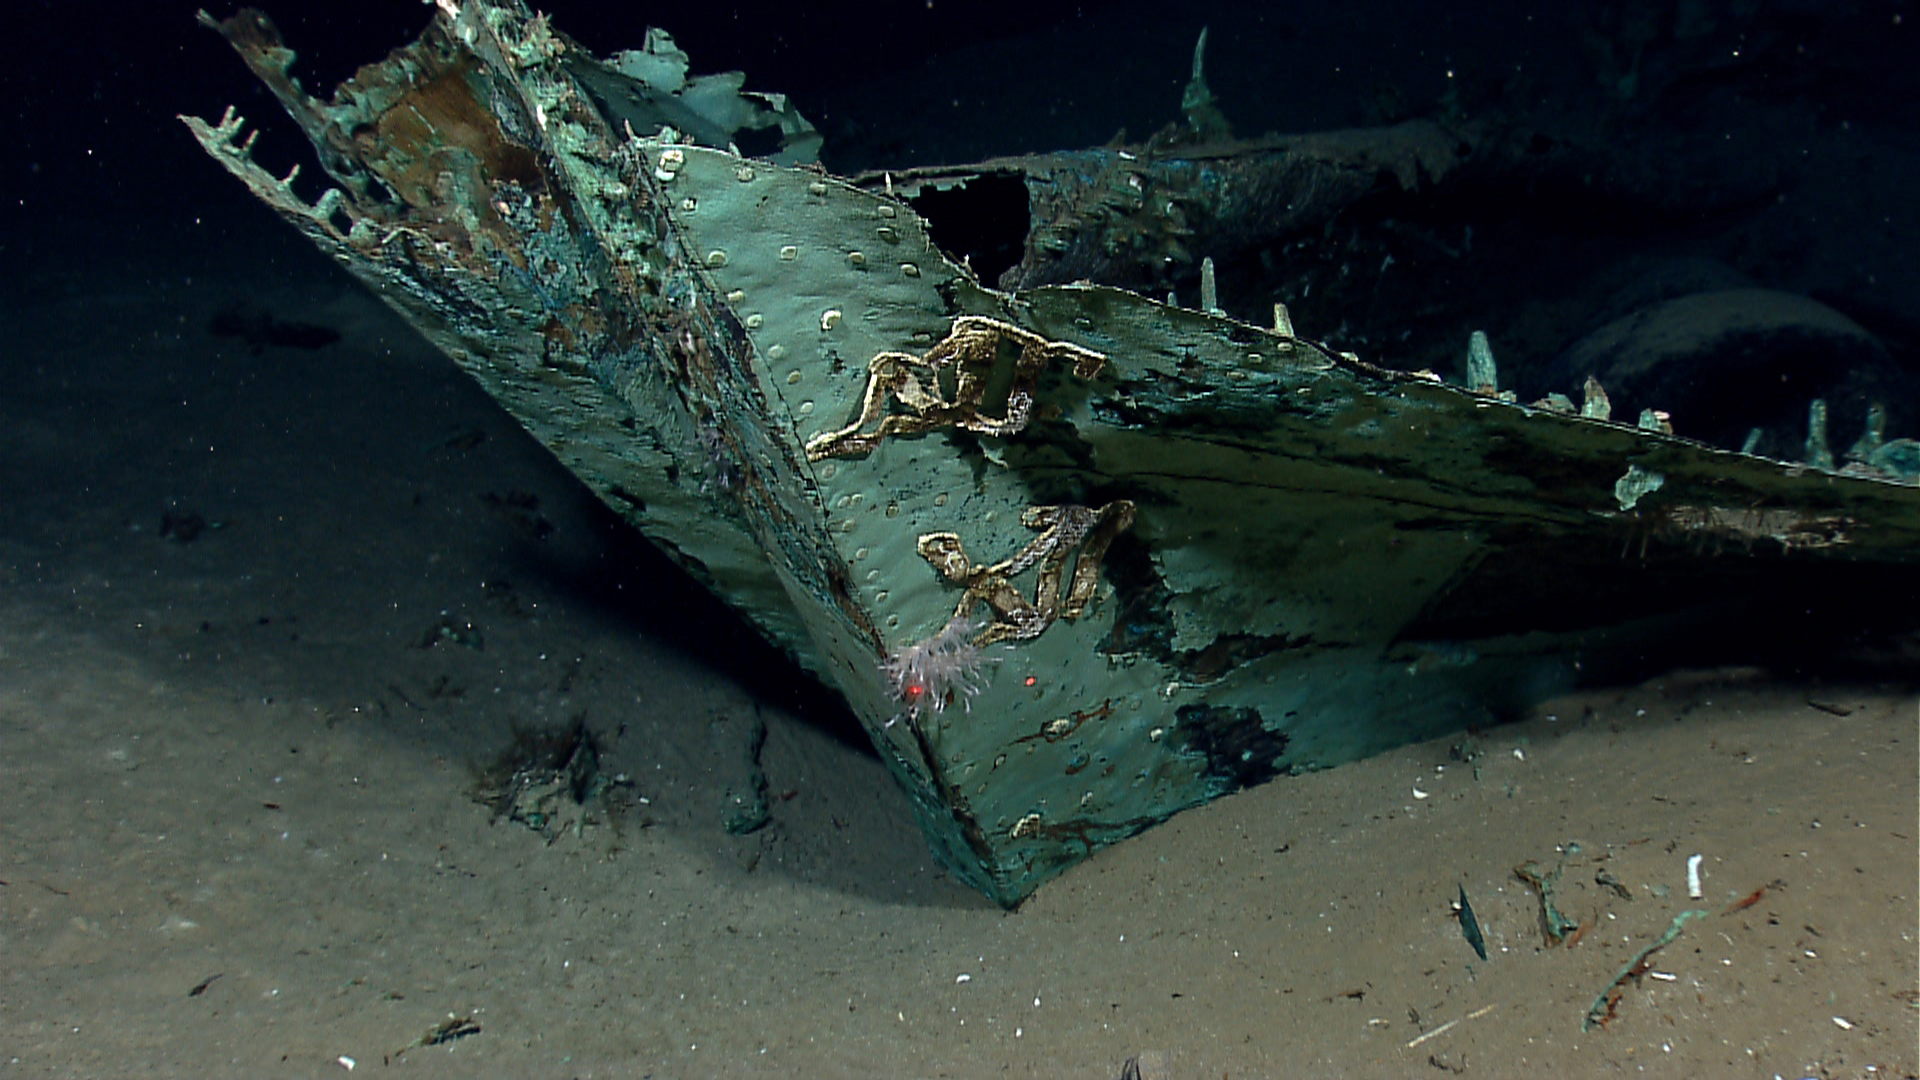 Inside Sunken Ship